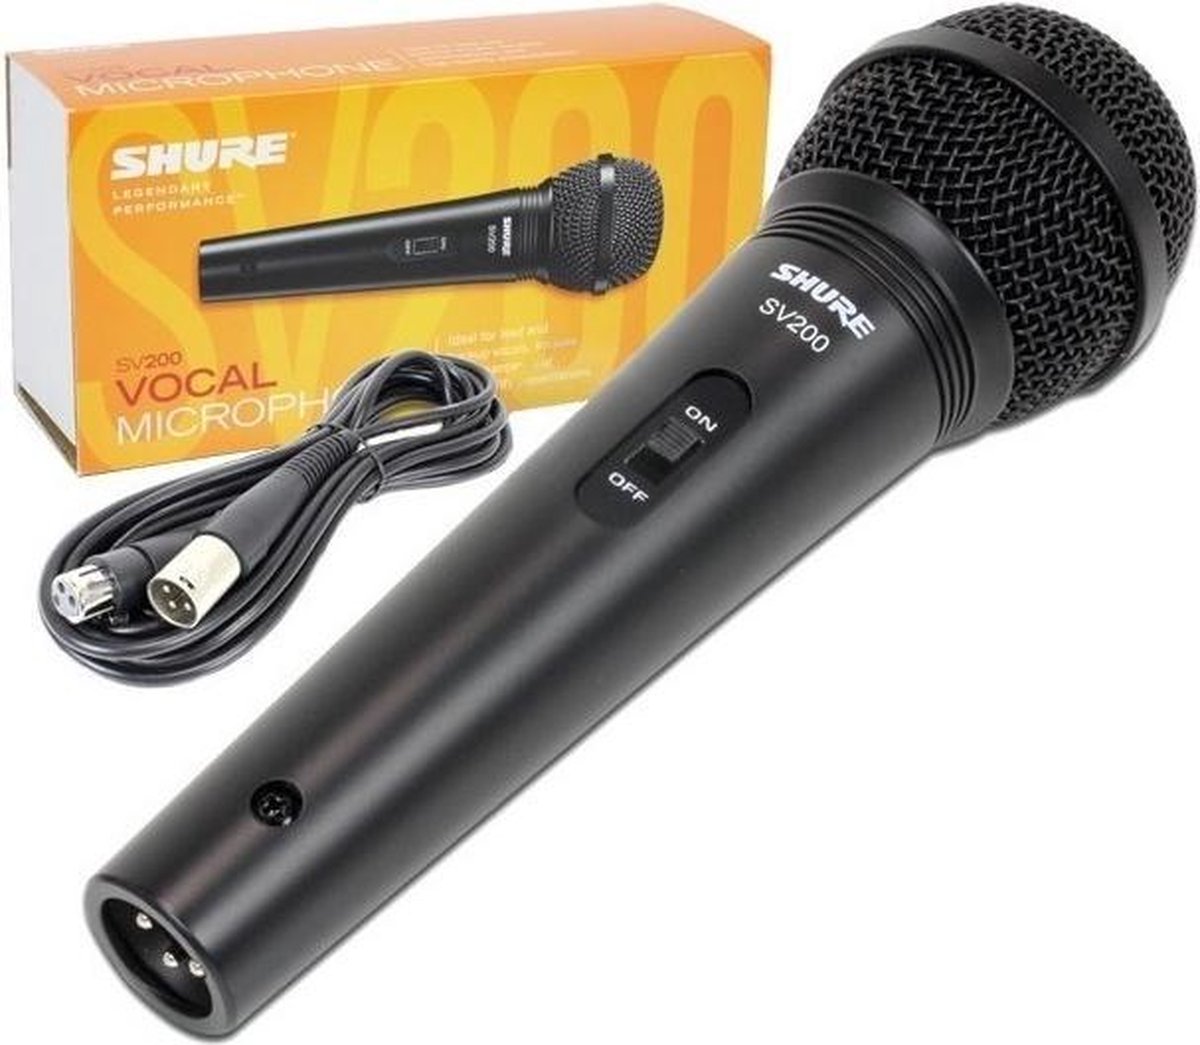 Shure SV200 microfoon Zwart Karaokemicrofoon